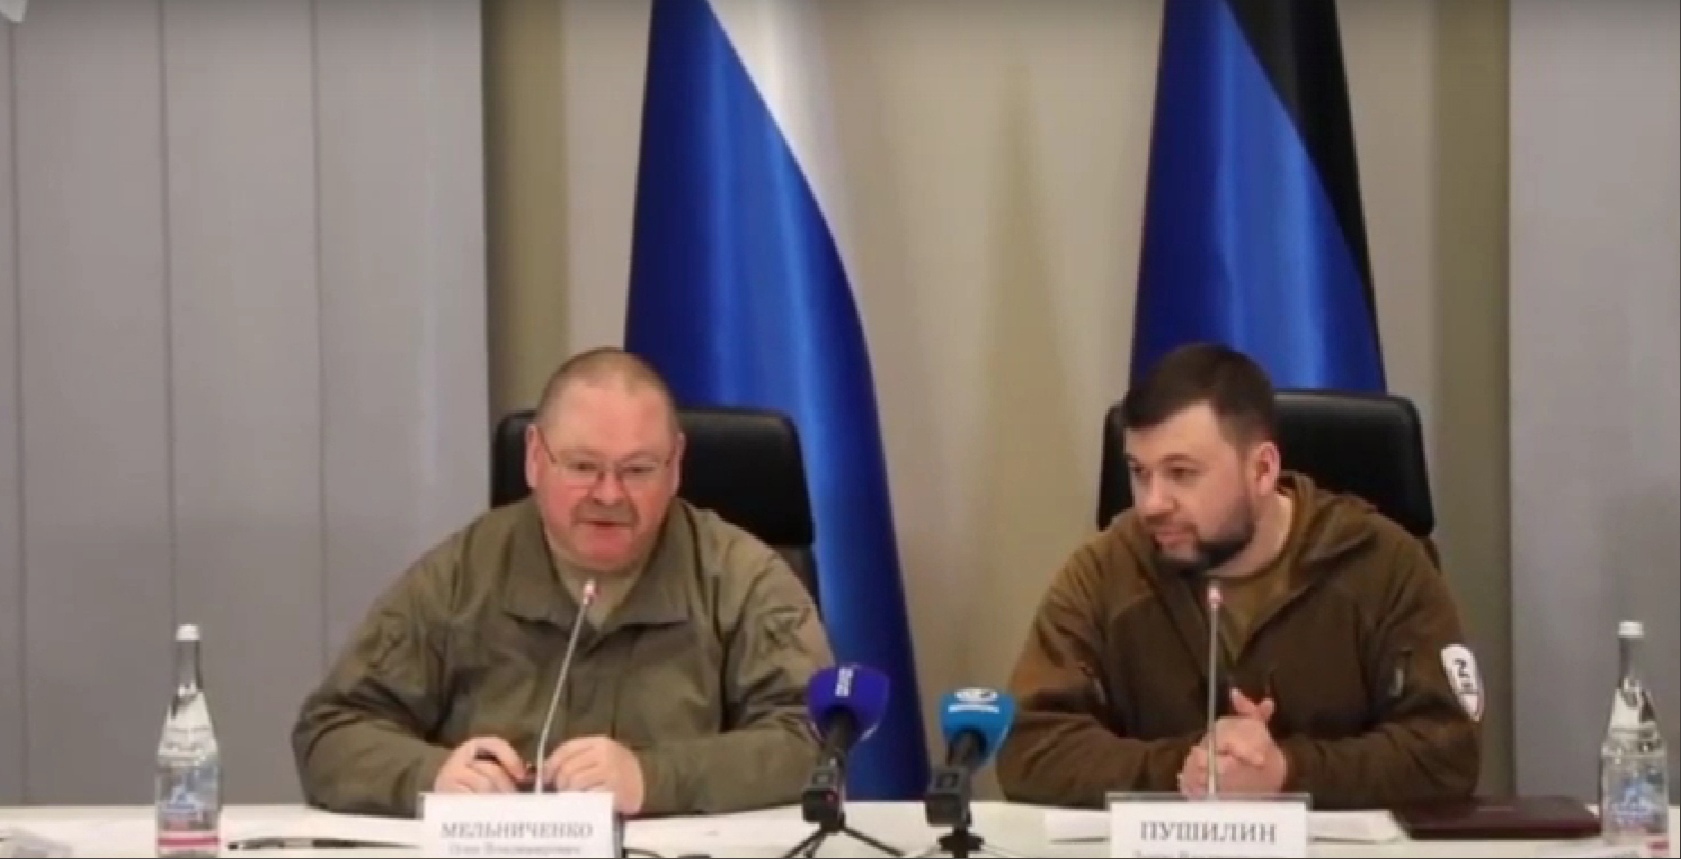 Олег Мельниченко заявил, что Пензенские предприятия будут сотрудничать с ДНР